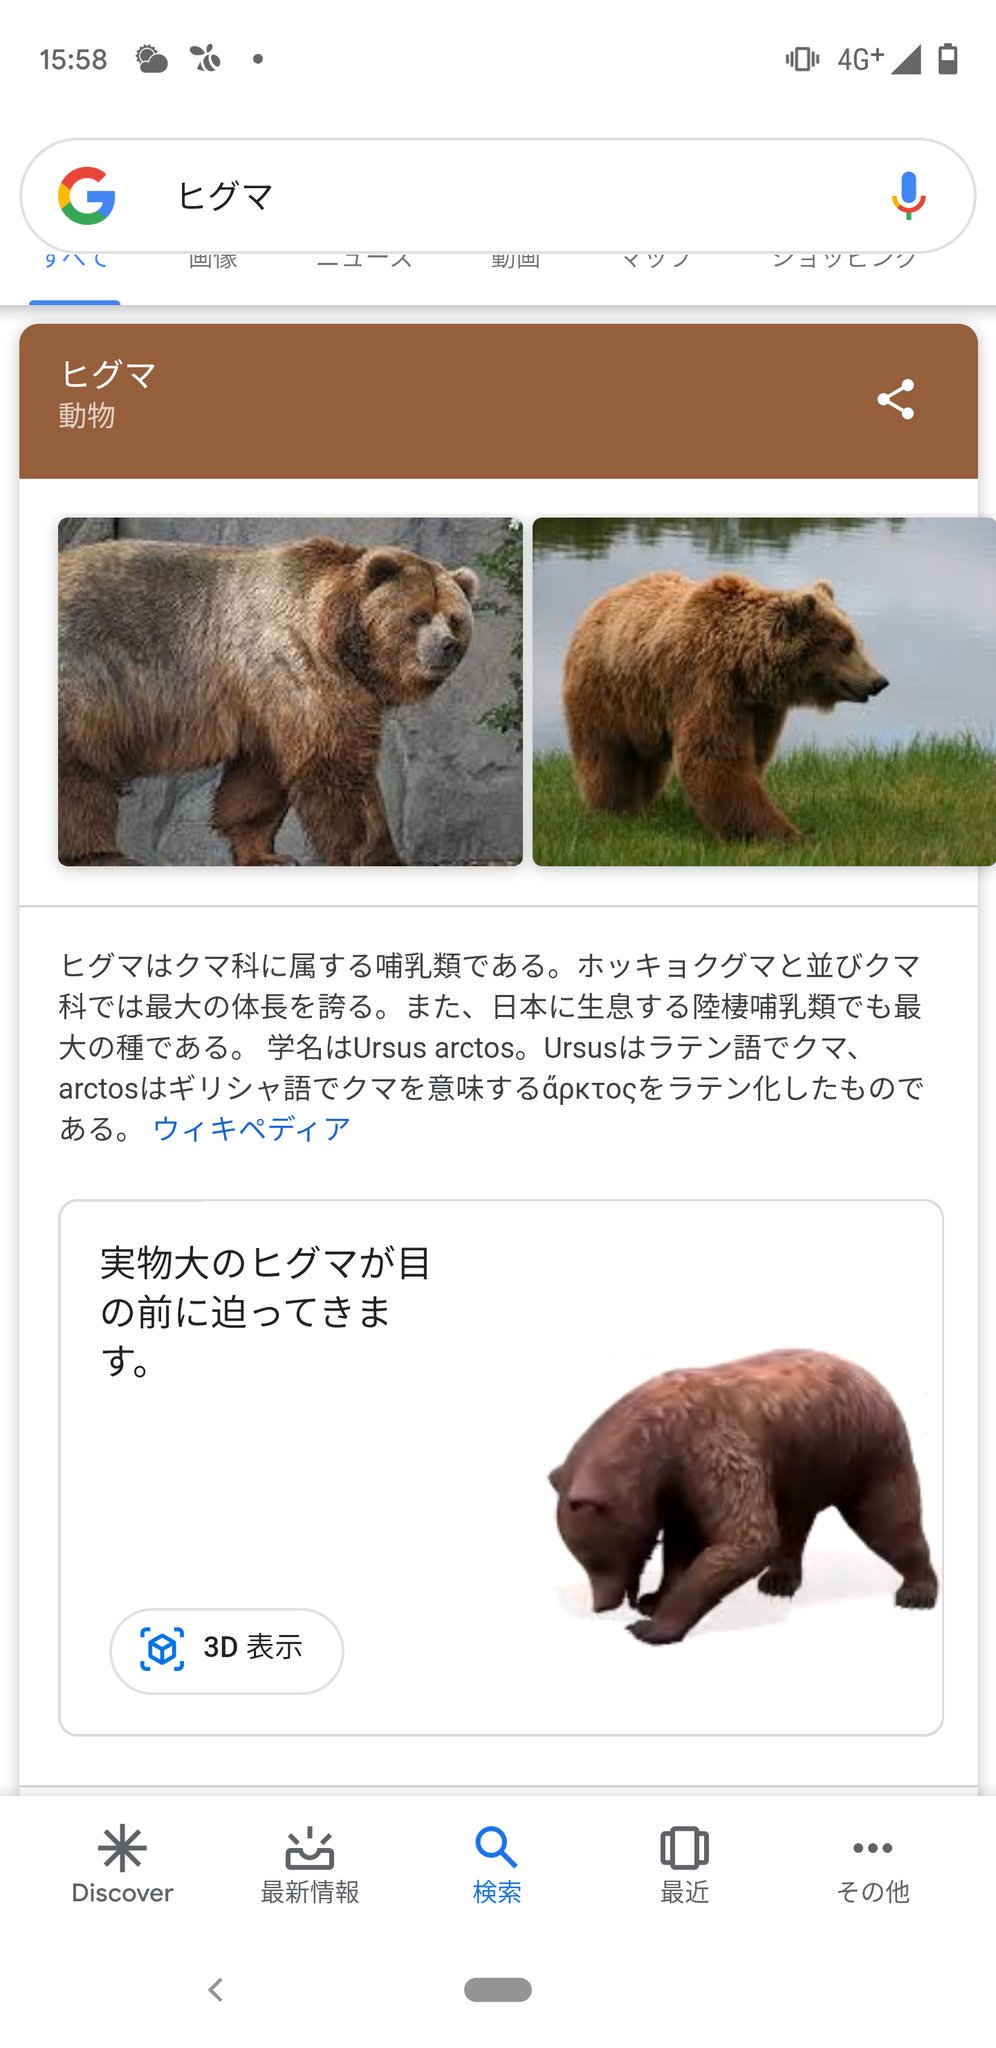 Twitter पर のぶクマ はたらく黒熊black クマ関係の皆様へ Google検索でヒグマと調べてみてください 3dモデルのヒグマがでてきて 現実世界との重ね合わせもできるみたいです